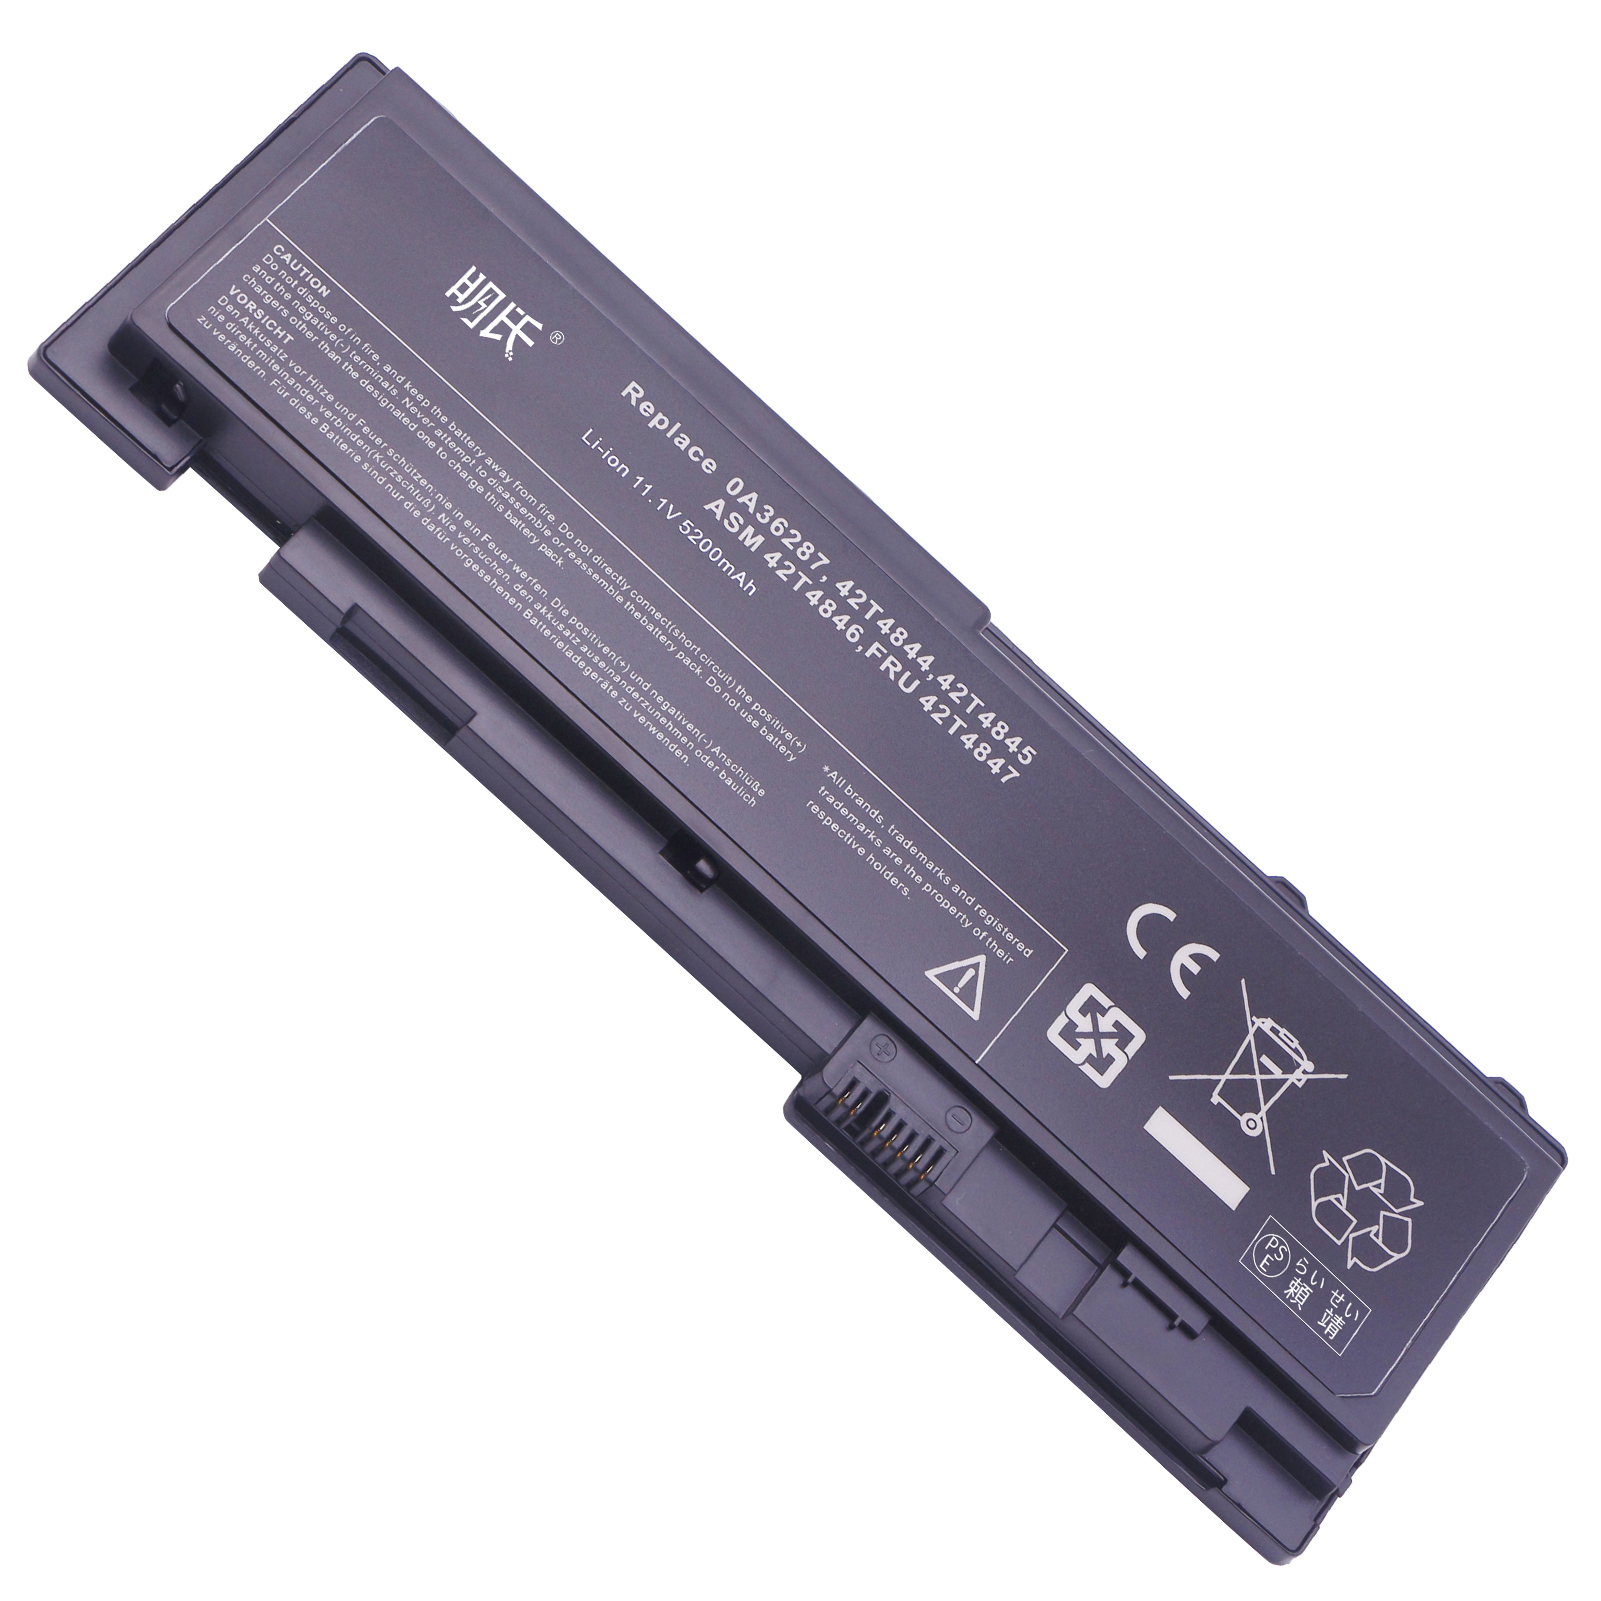  minshi NEC VY25 対応 5200mAh  高品質互換バッテリーWGAB